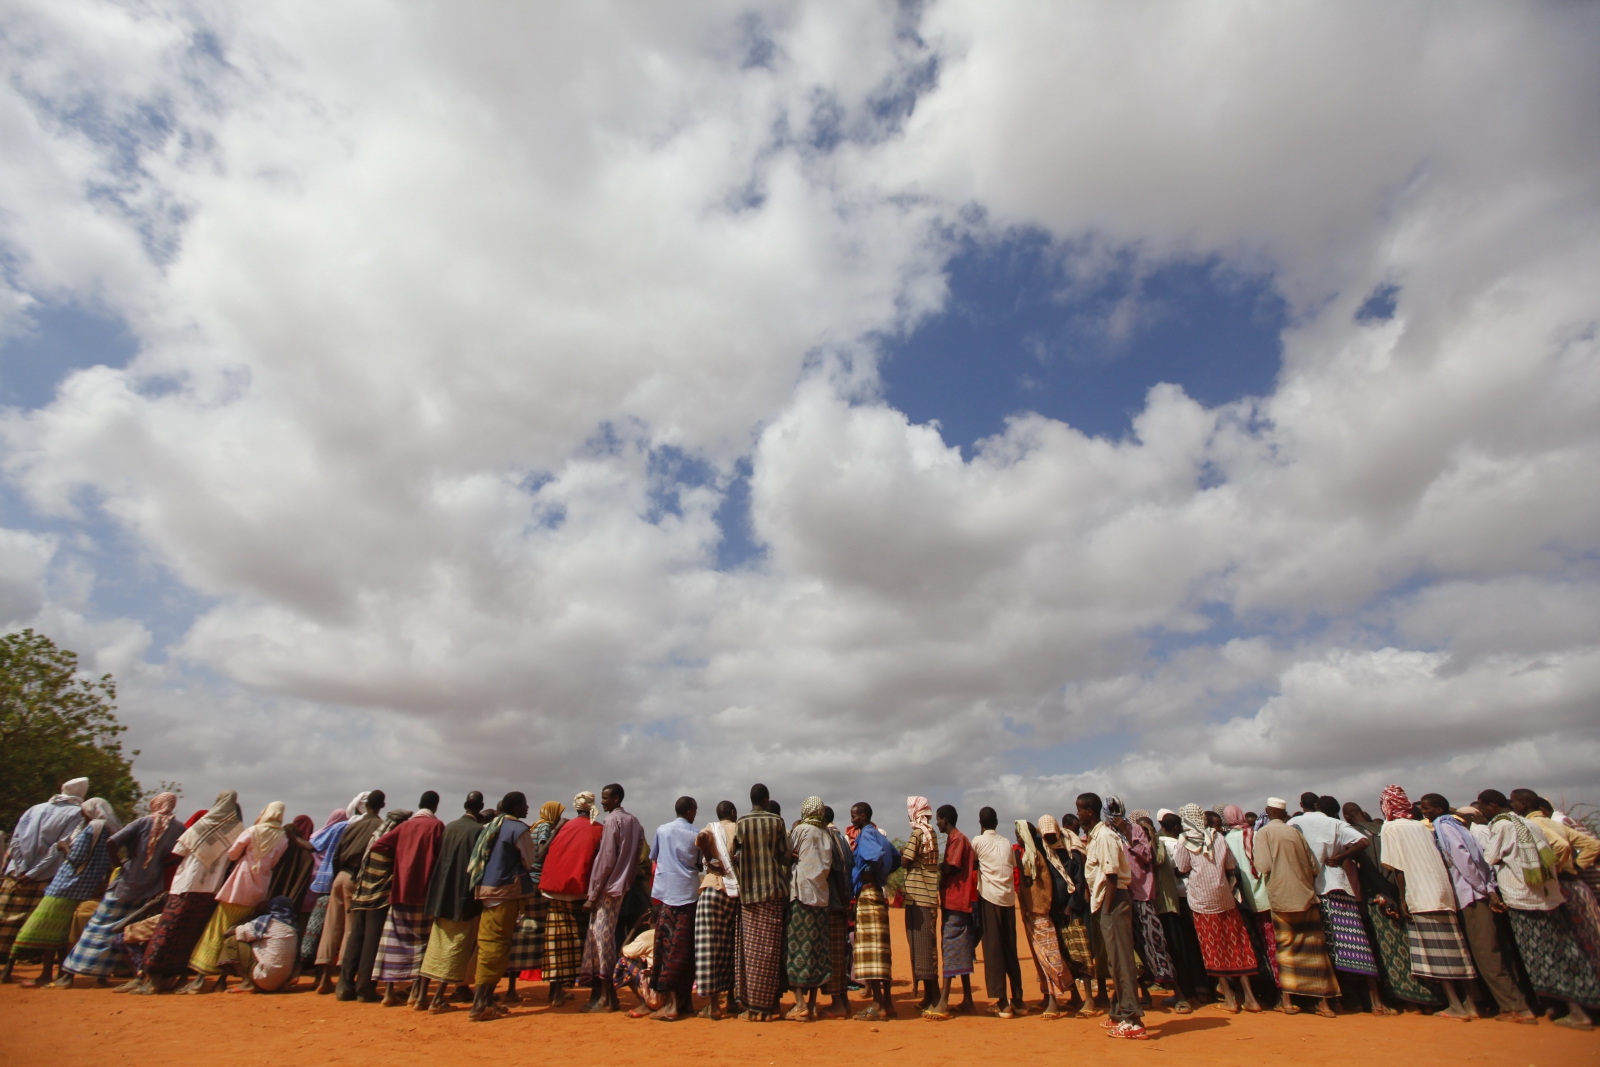 Uchodźcy z Somalii czekający w kolejcy by dostać się do obozu w Kenii.
Fot. PAP/EPA/DAI KUROKAWA